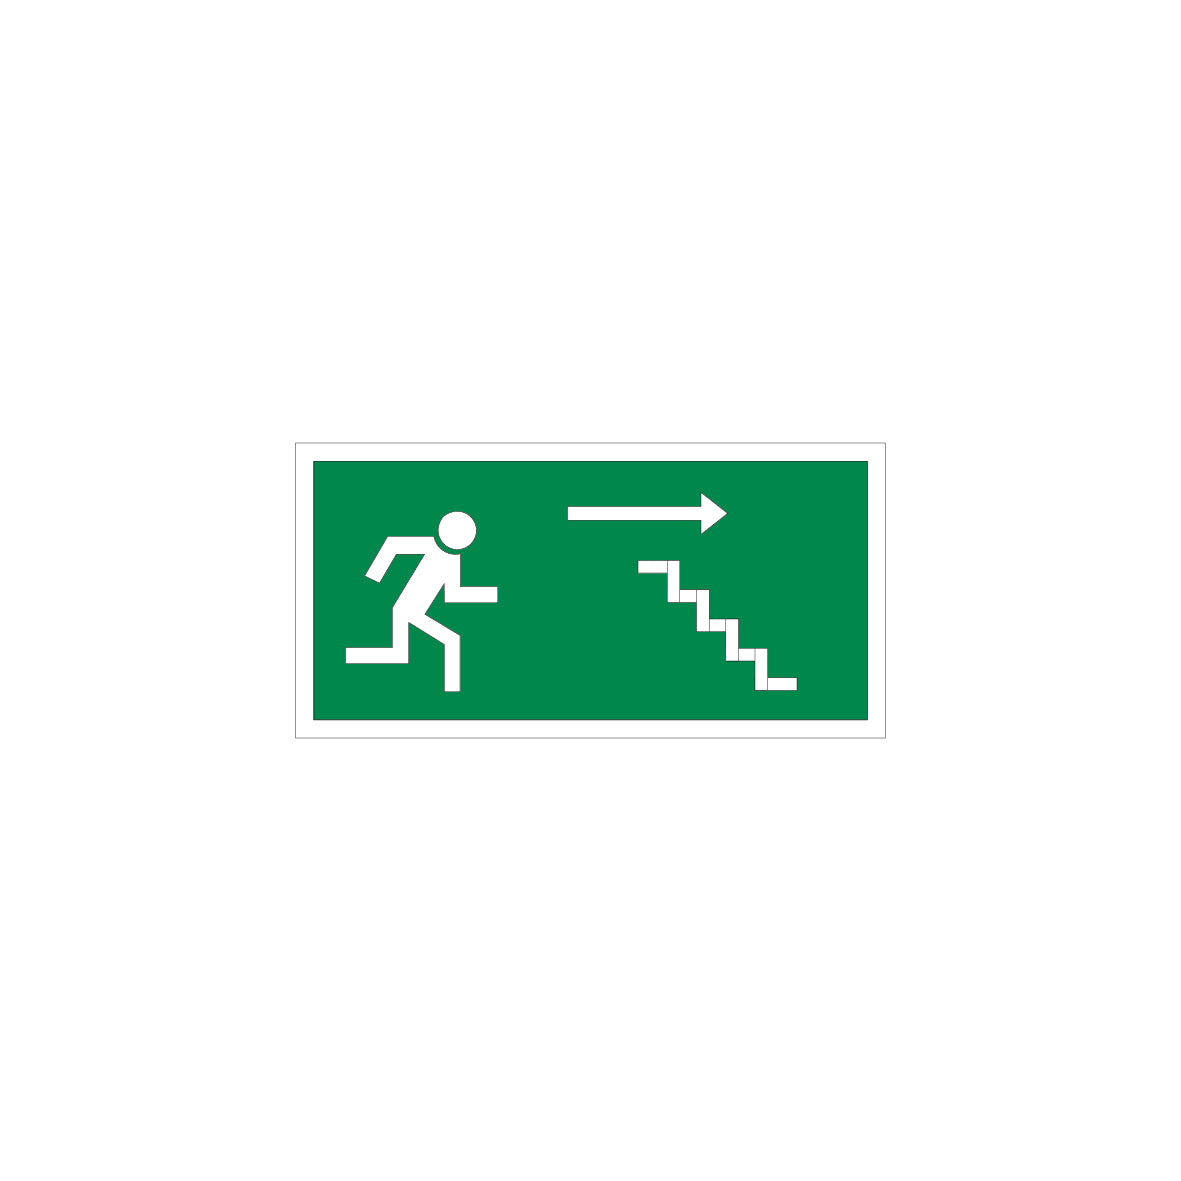 6.R-921 Notausgang Treppe, Rettungszeichen, praxisbewährt